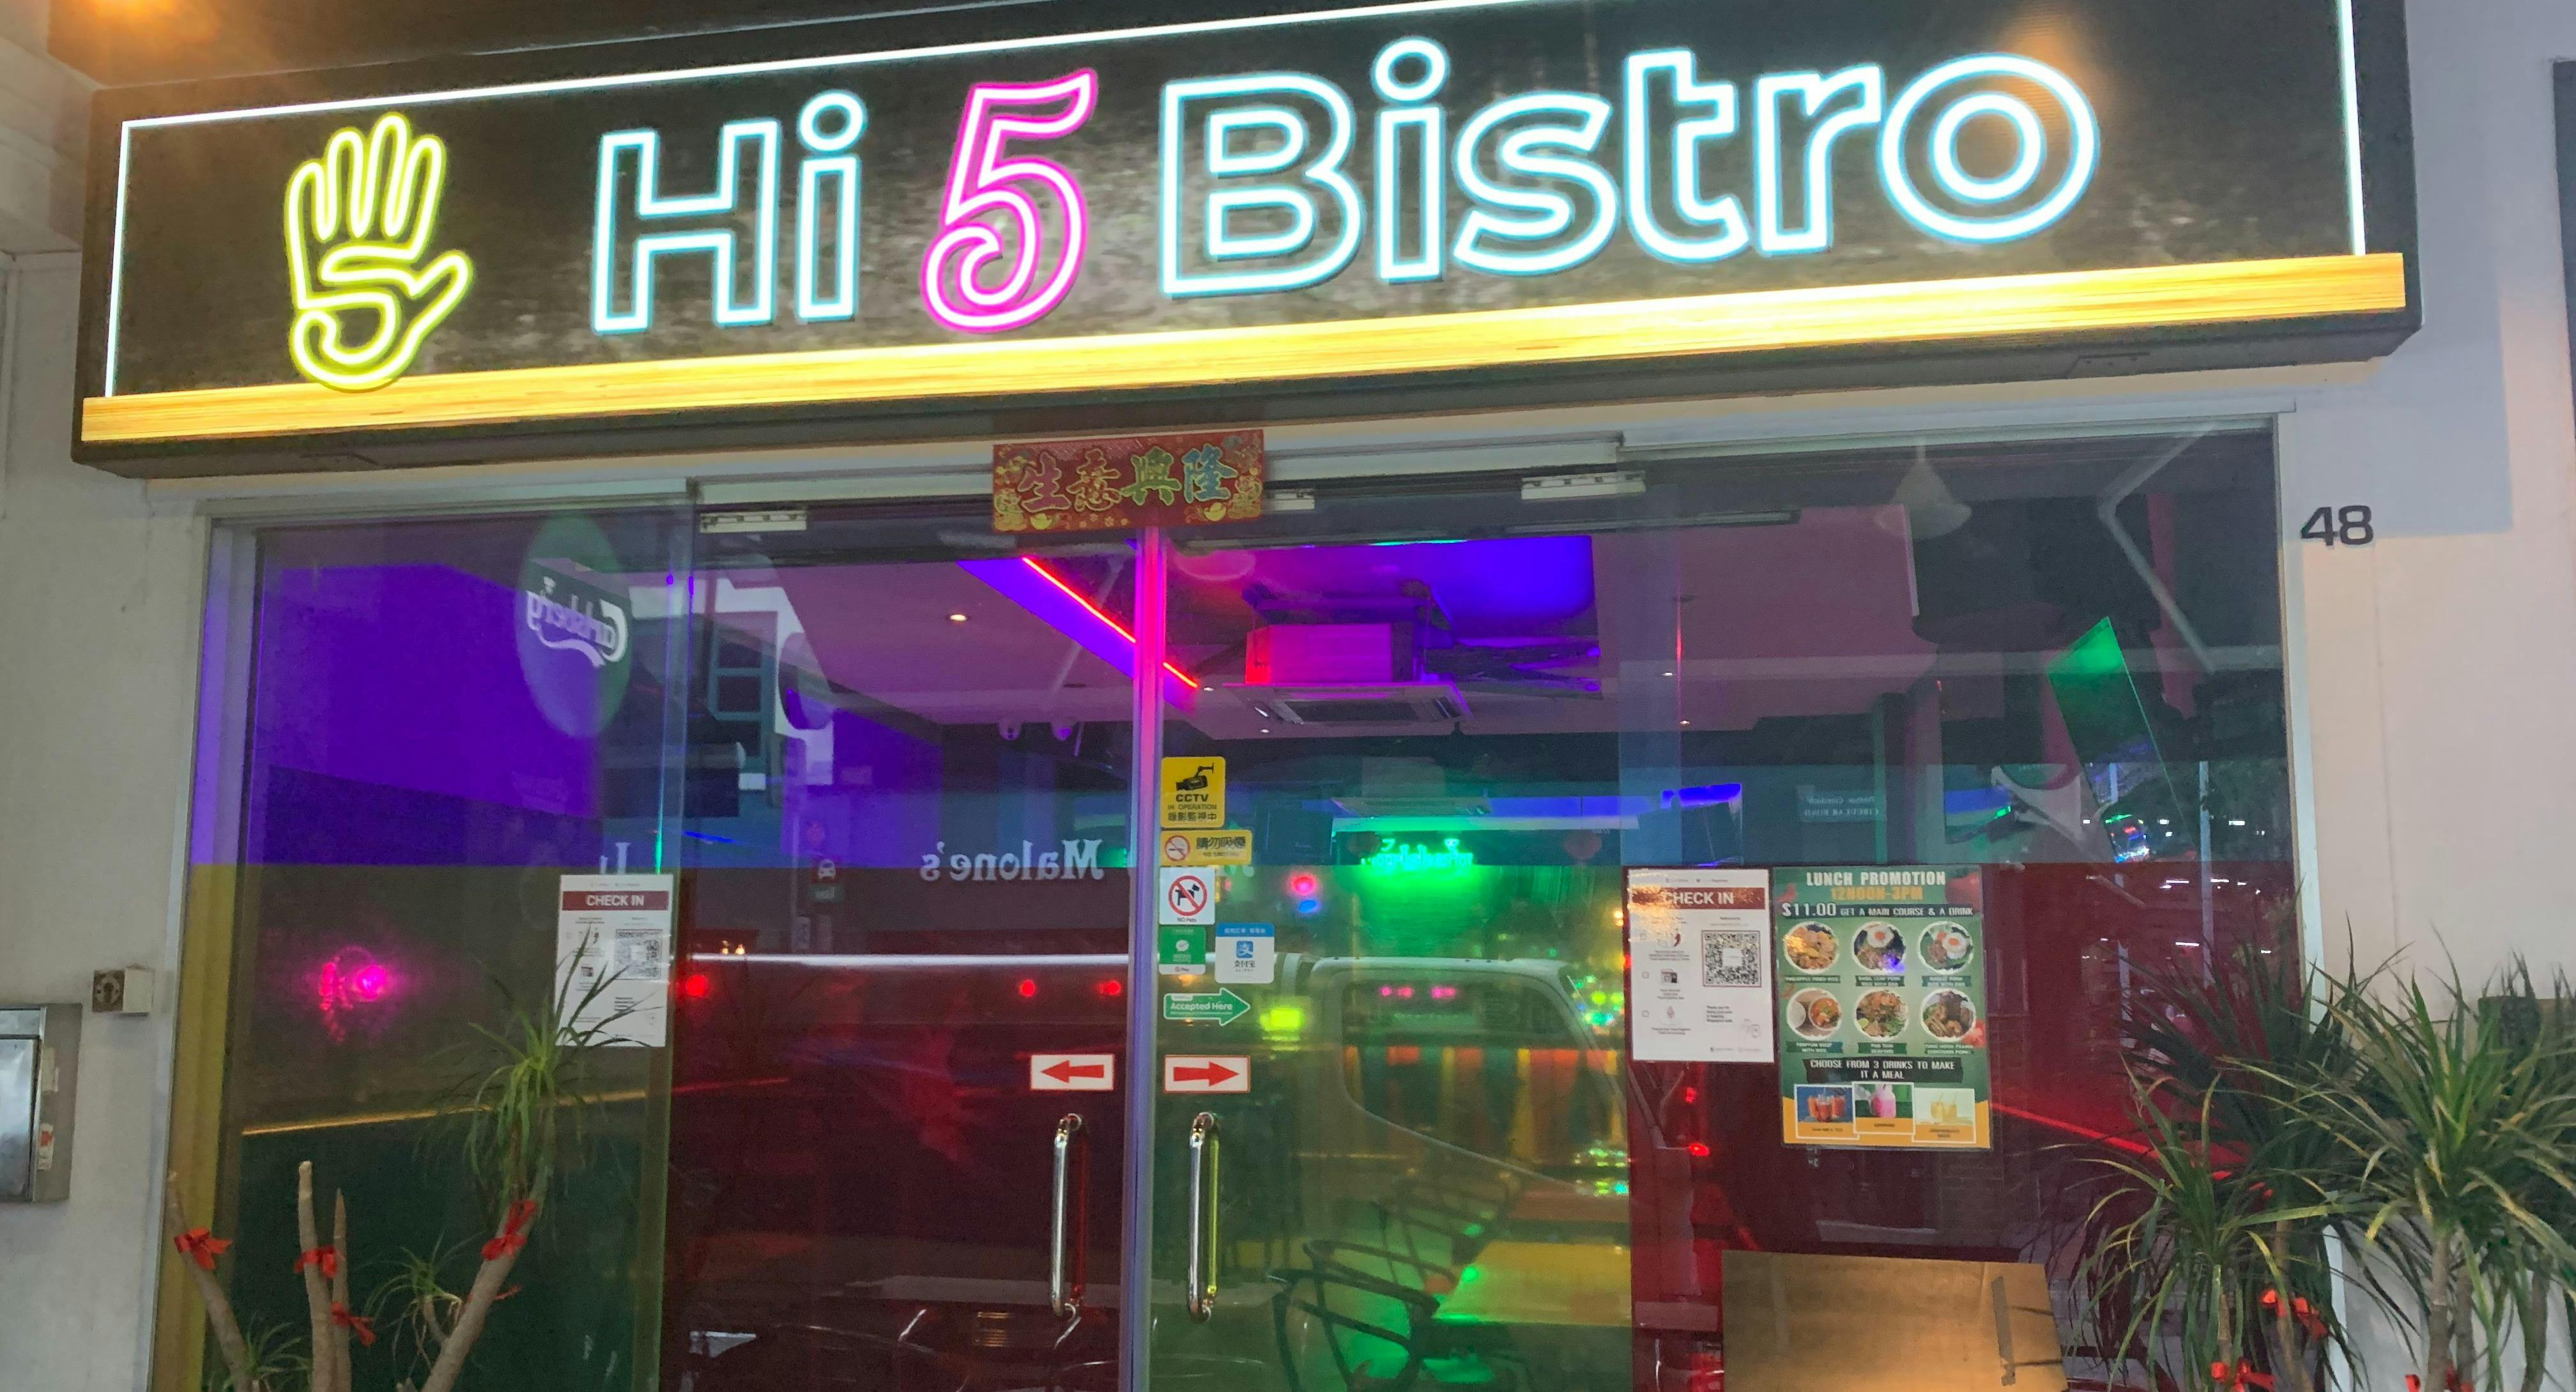 Photo of restaurant Hi 5 Bistro in Clarke Quay, Singapore